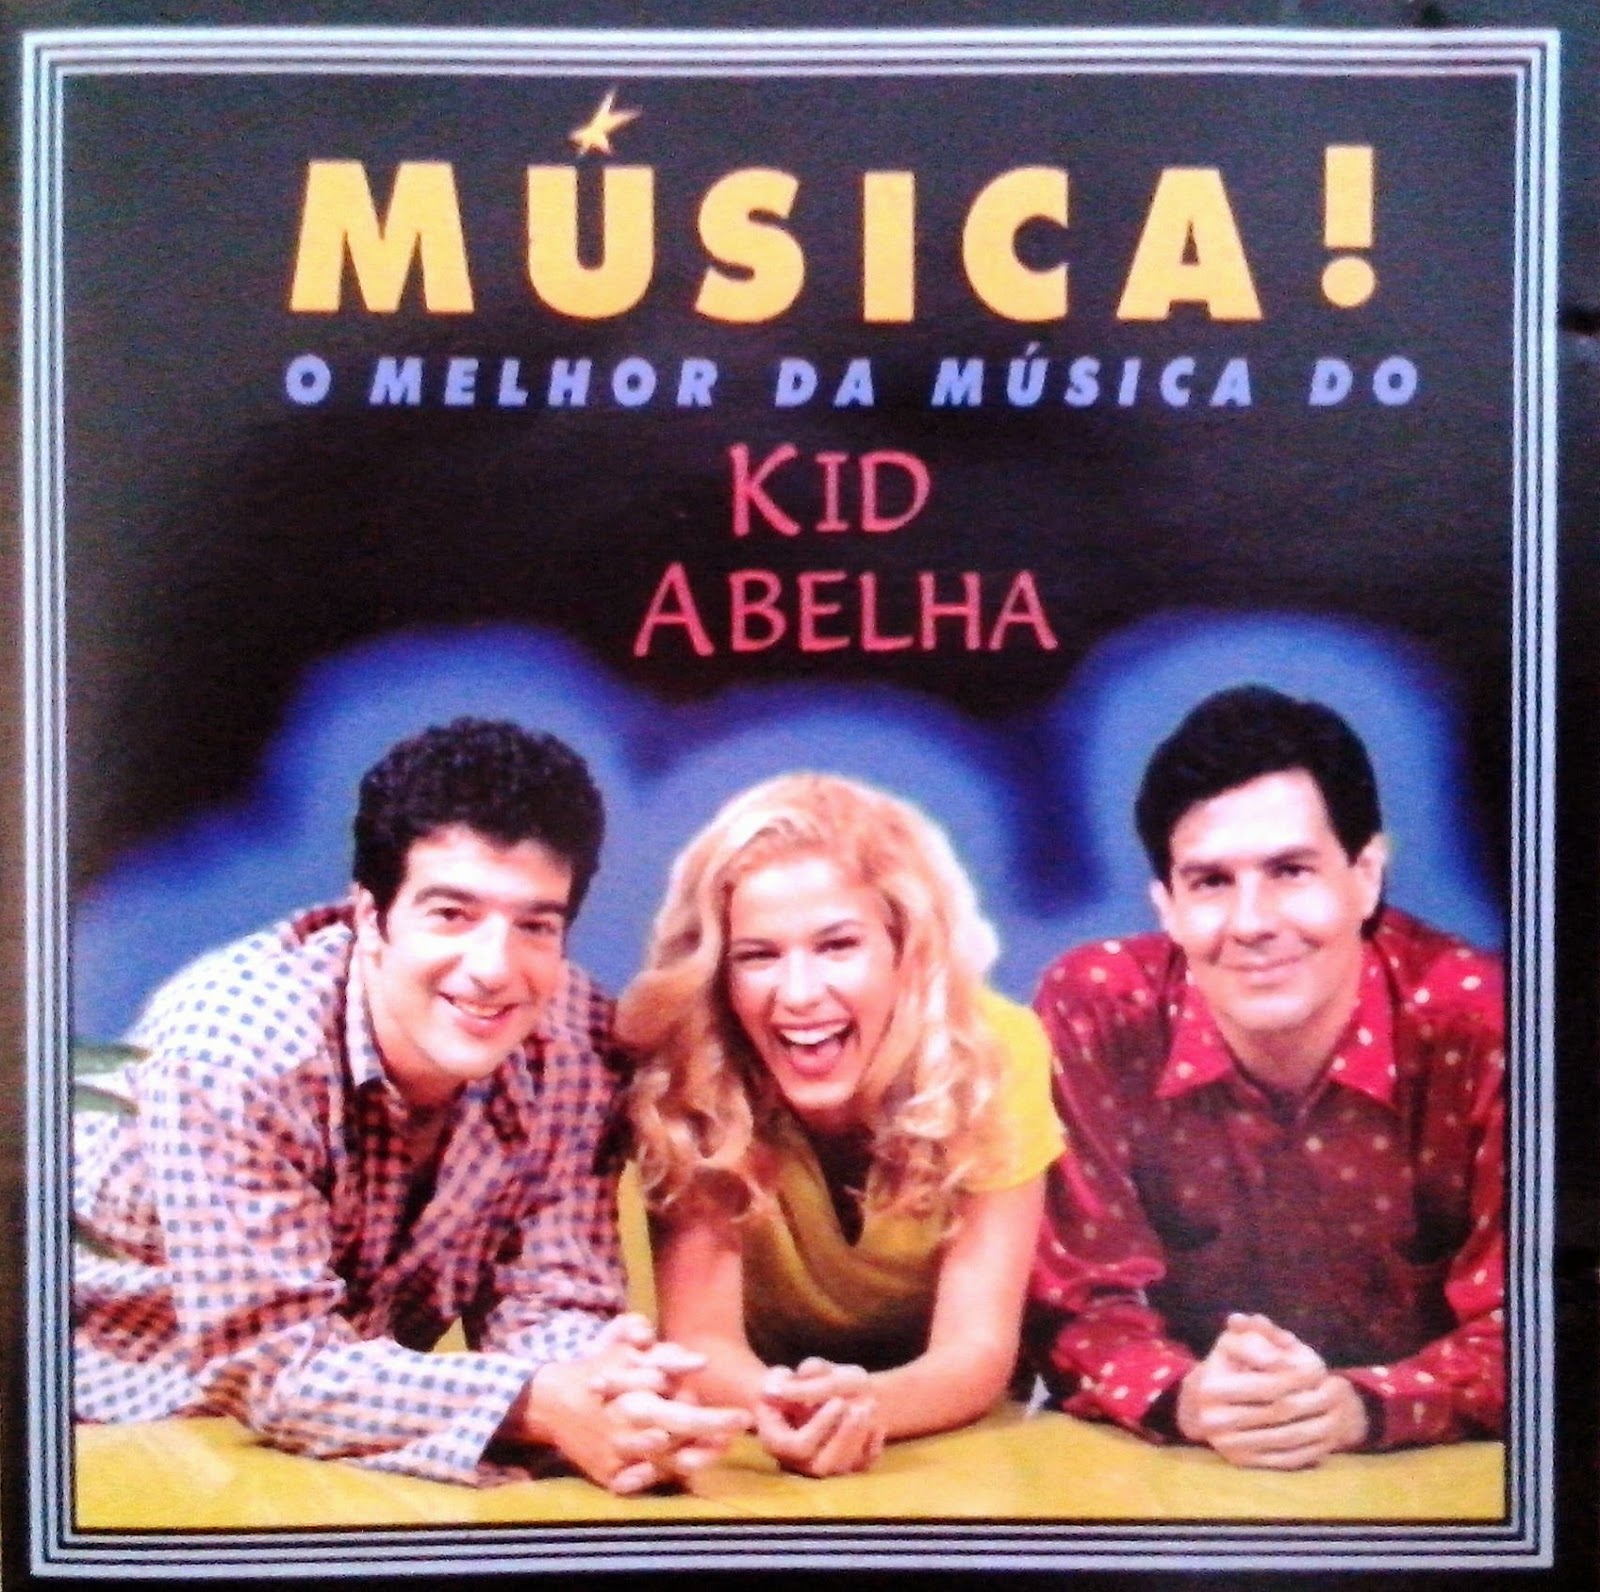 Only My CD's!: Kid Abelha - O Melhor da Música do Kid Abelha